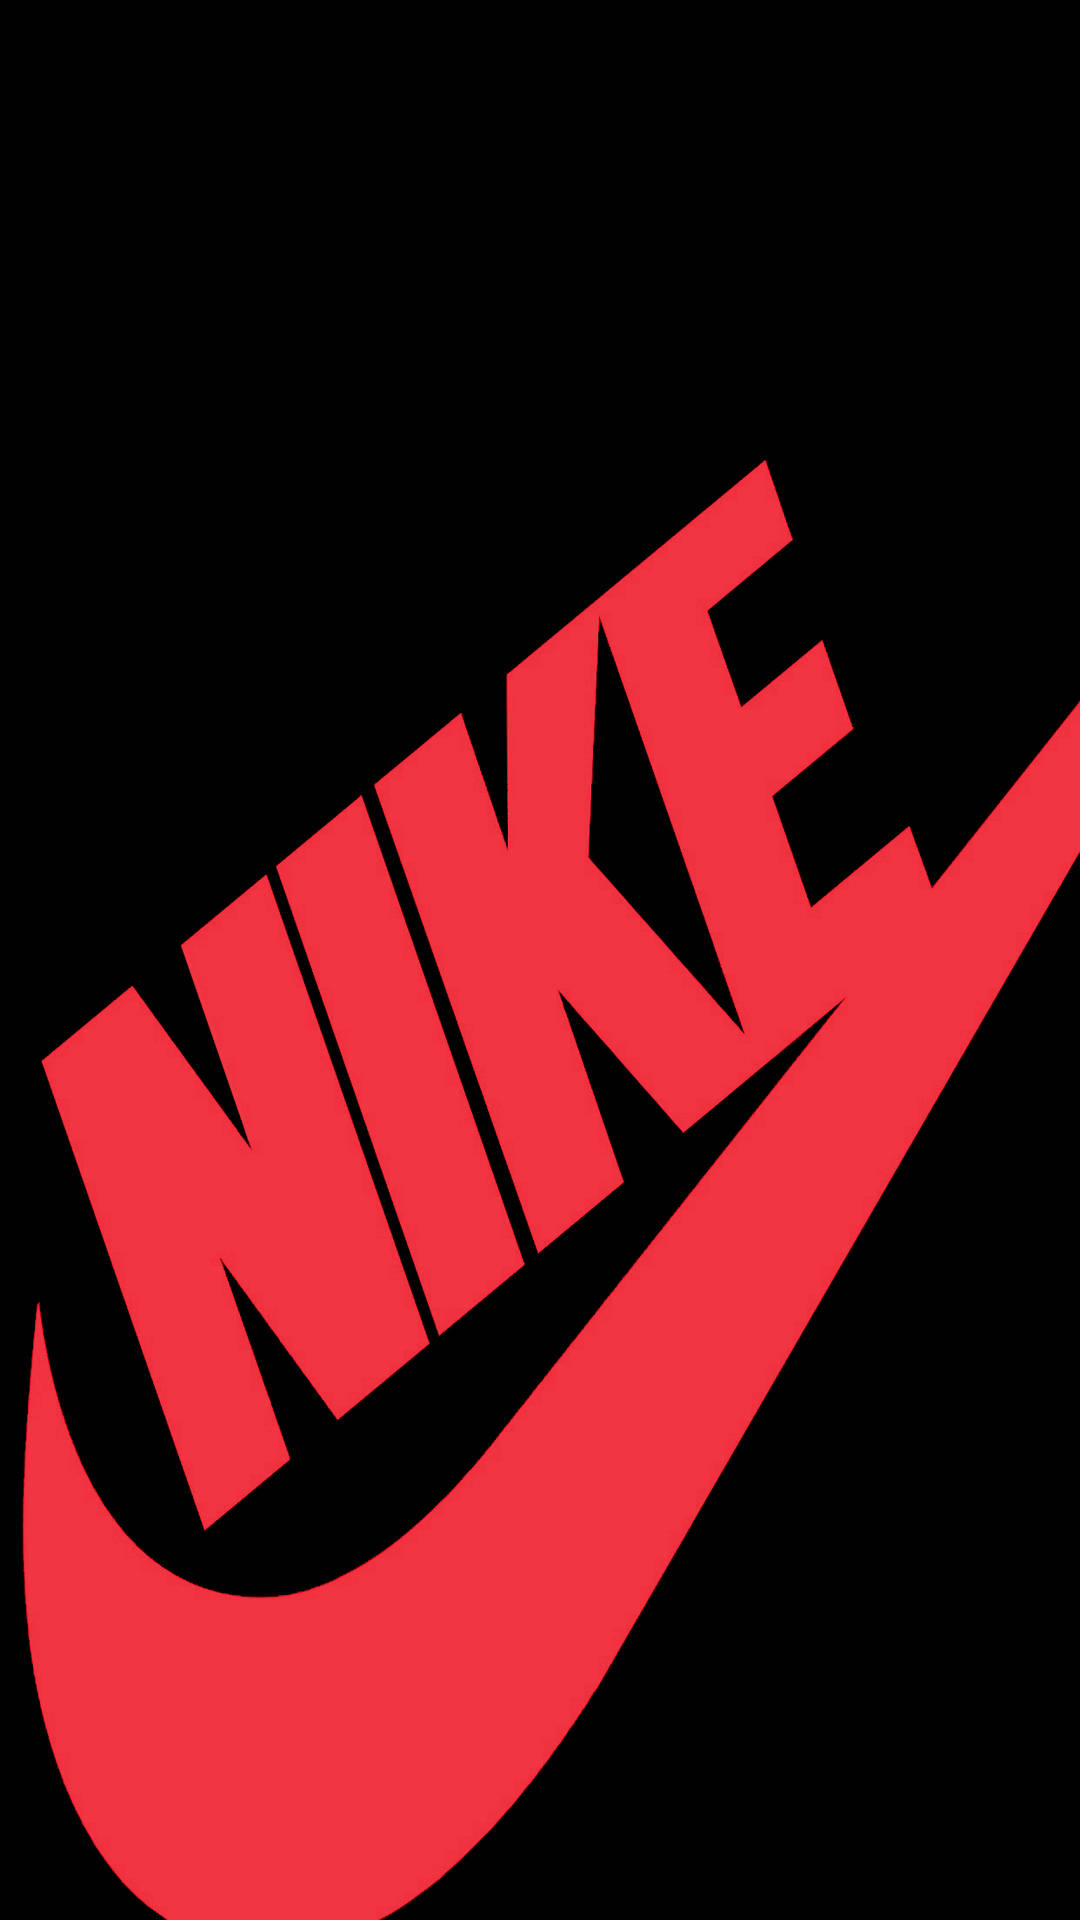 Meninaclássica Do Logotipo Da Nike Em Caixa. Papel de Parede